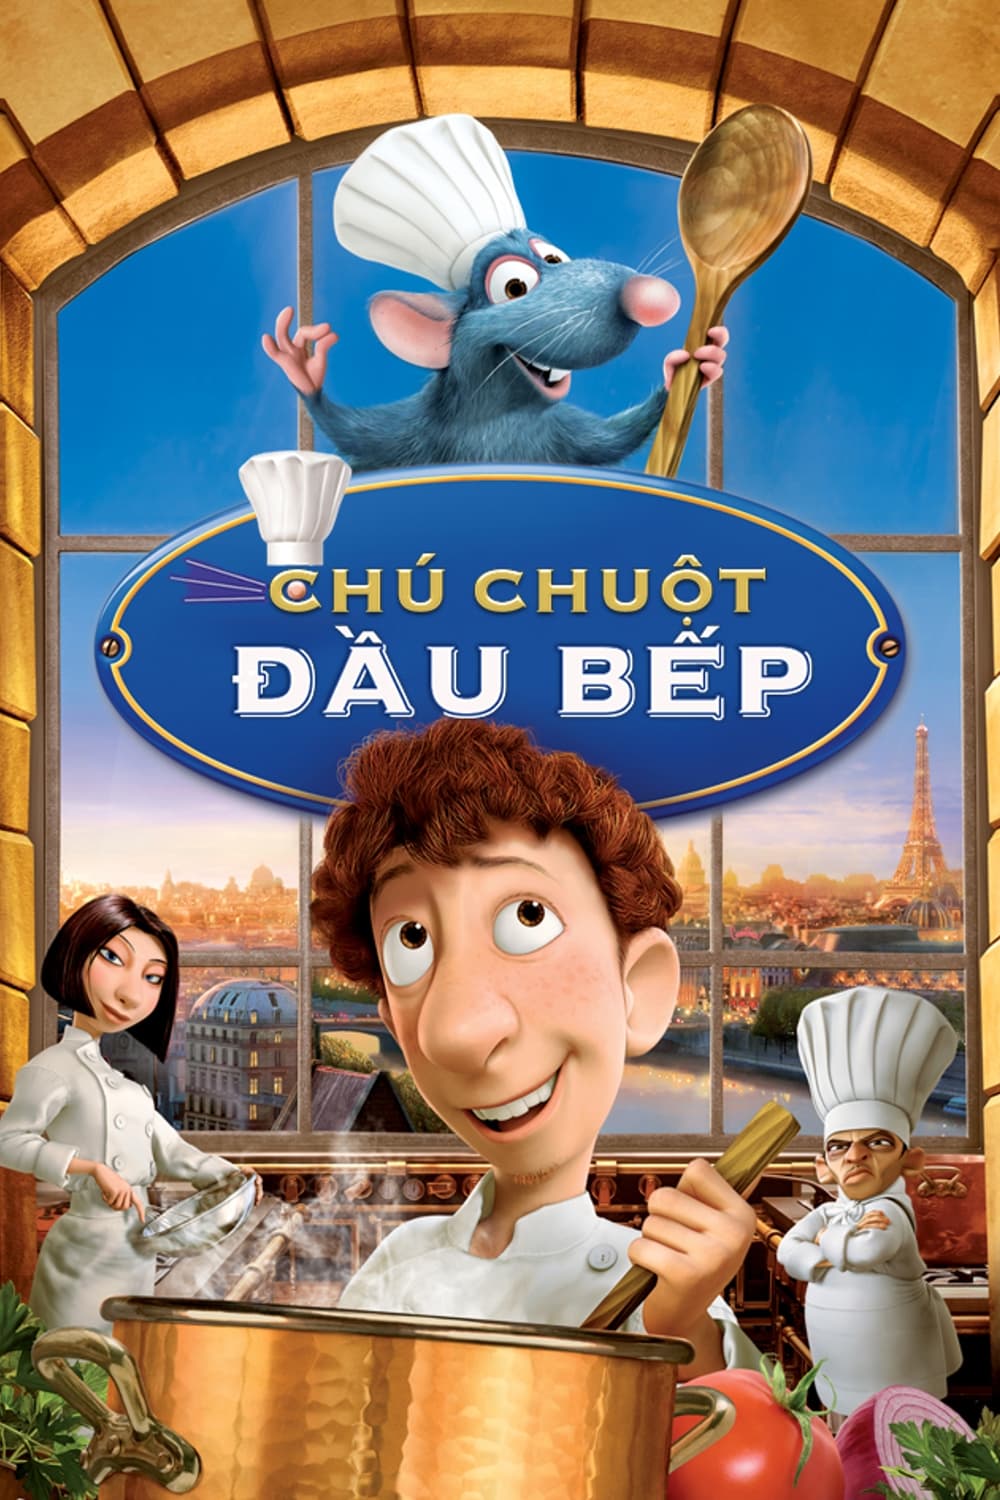 Chú Chuột Đầu Bếp (Ratatouille) [2007]